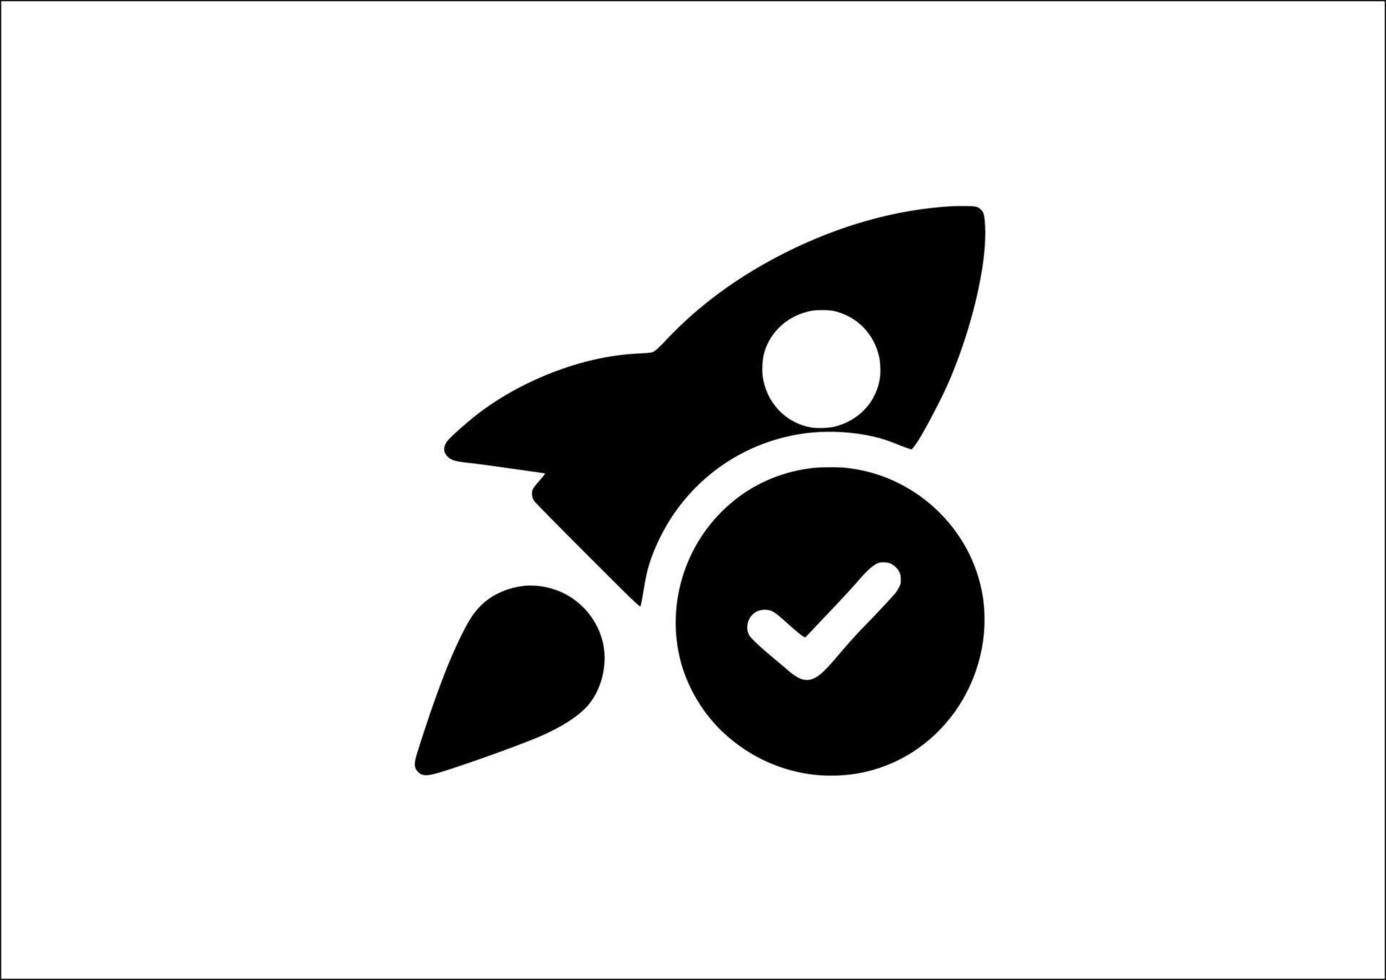 símbolo do ícone do foguete no fundo branco vetor